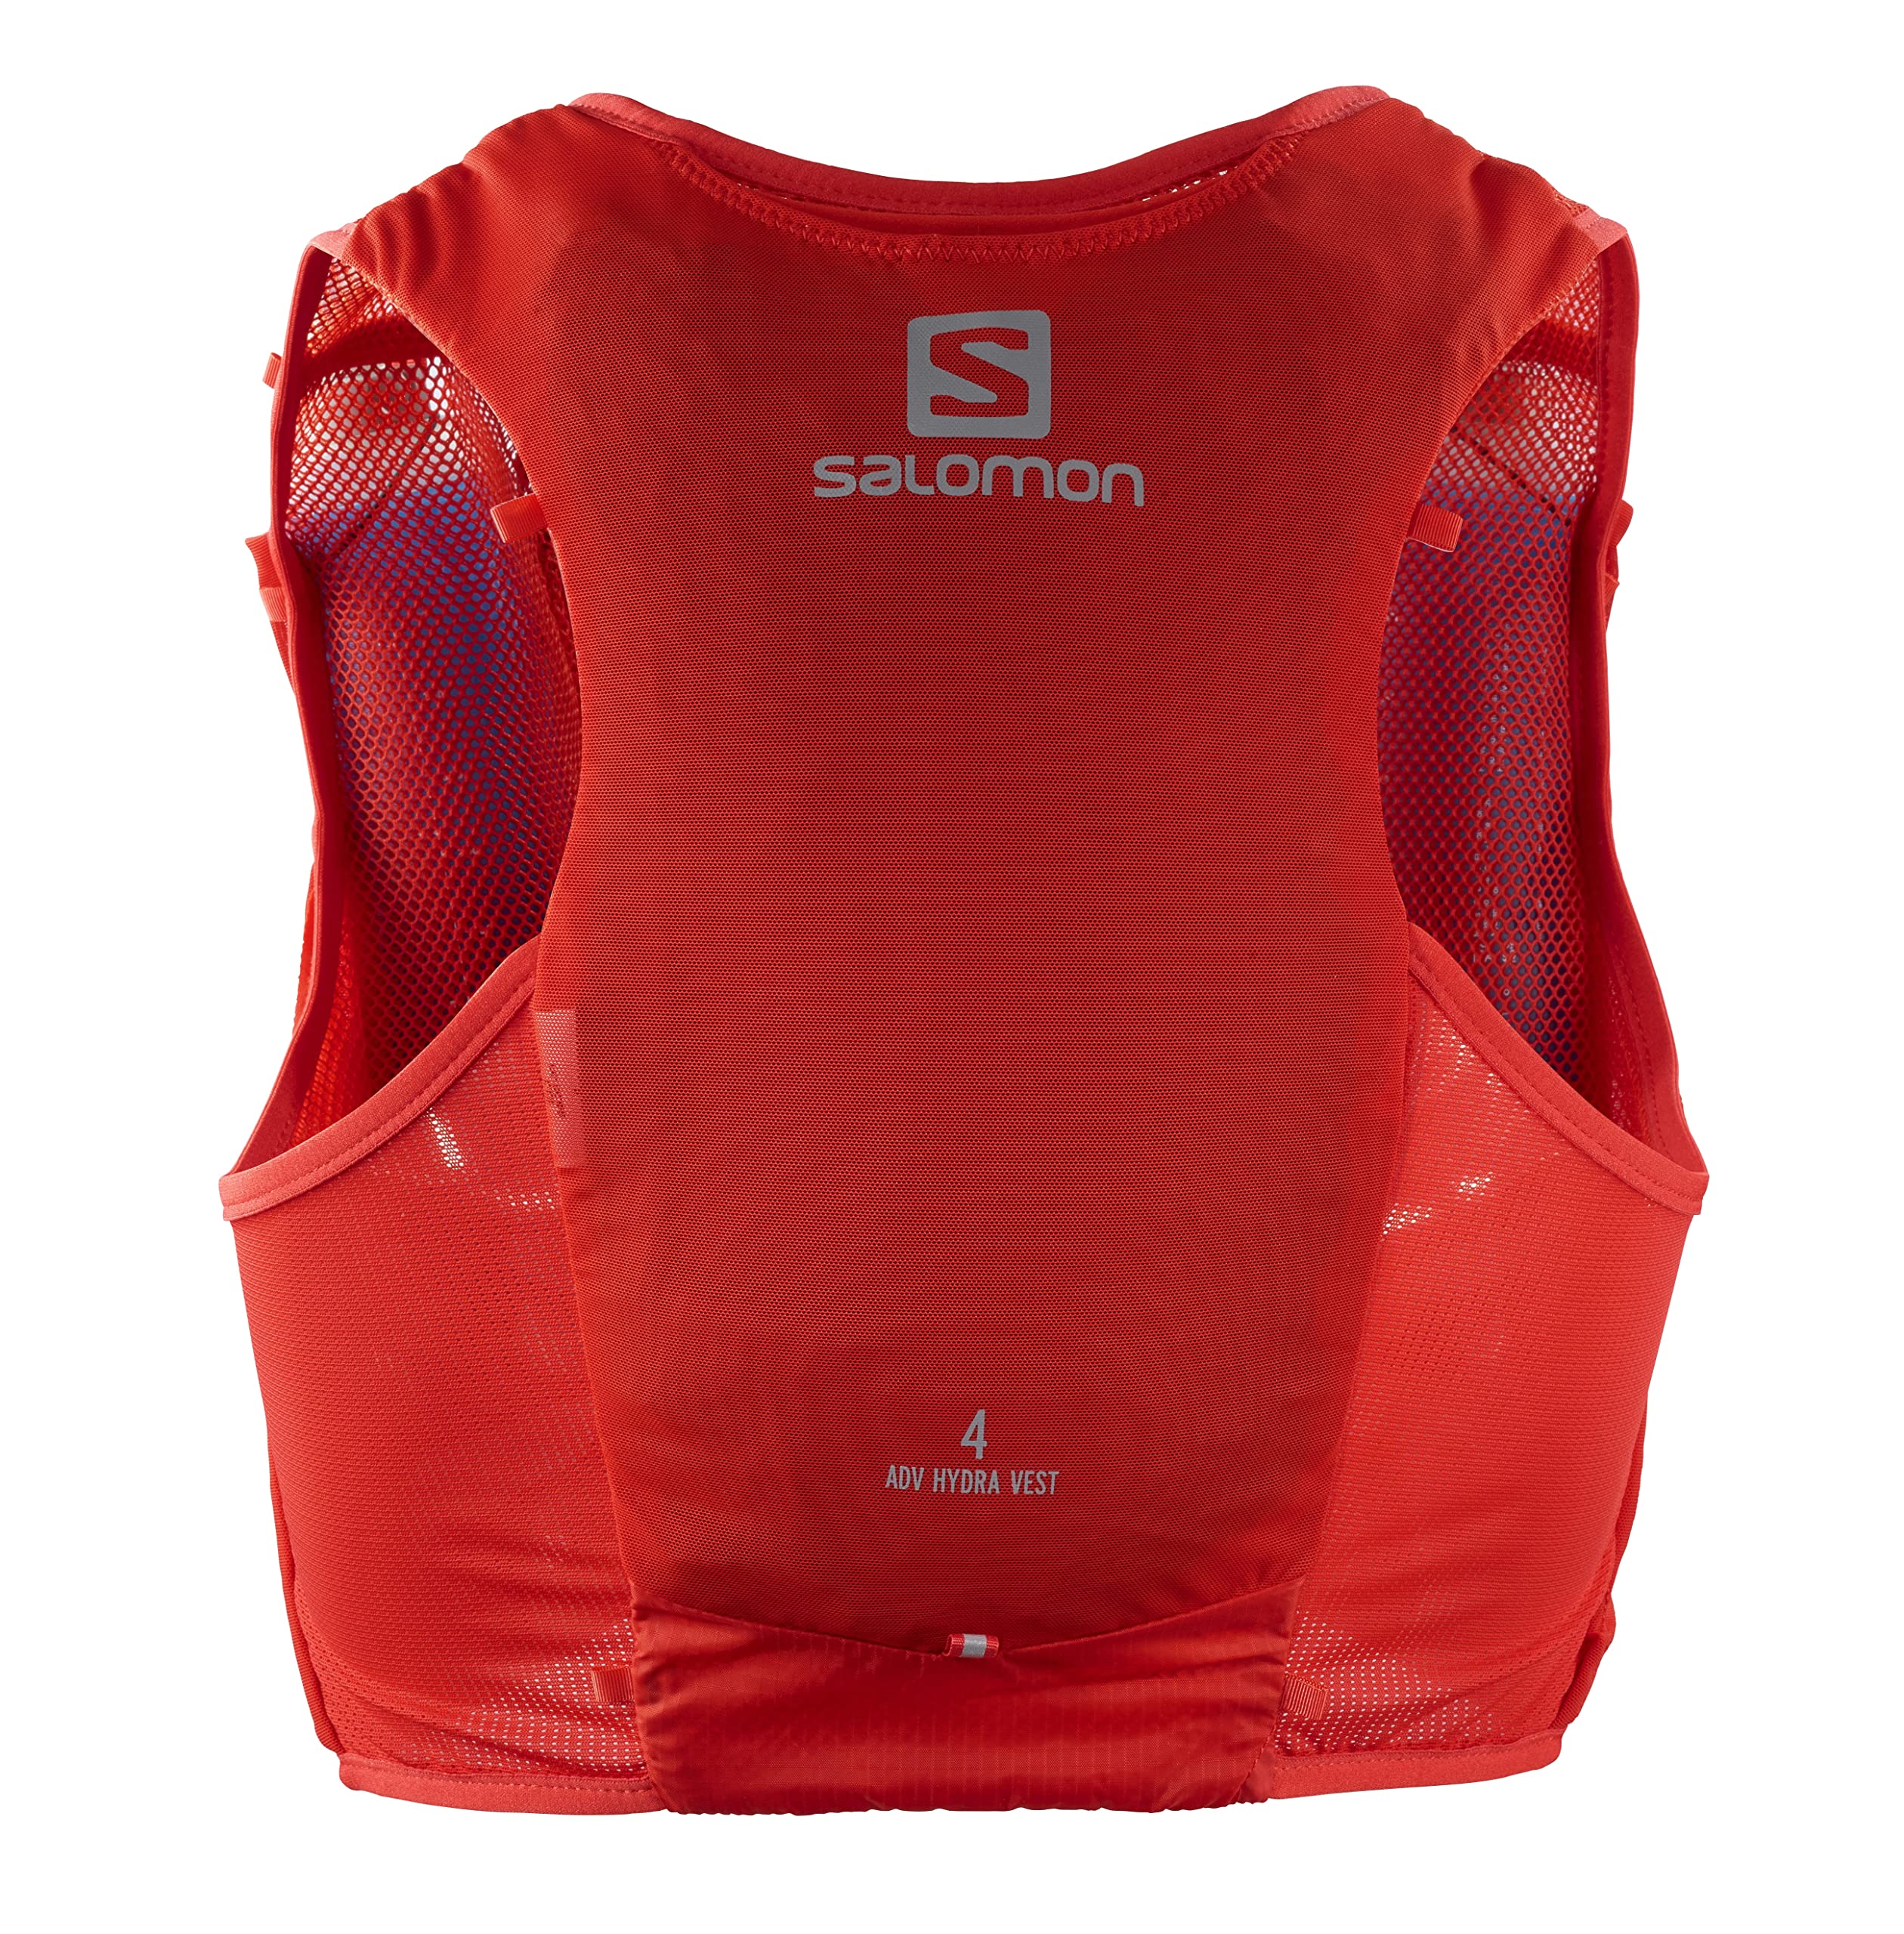 Salomon Adv Hydra Vest 4 Unisex Hydrationsweste Trail running Wandern MTB, Komfort und Stabilität, Schneller Zugriff auf Flüssigkeitszufuhr, Einfaches Design, Rot, M